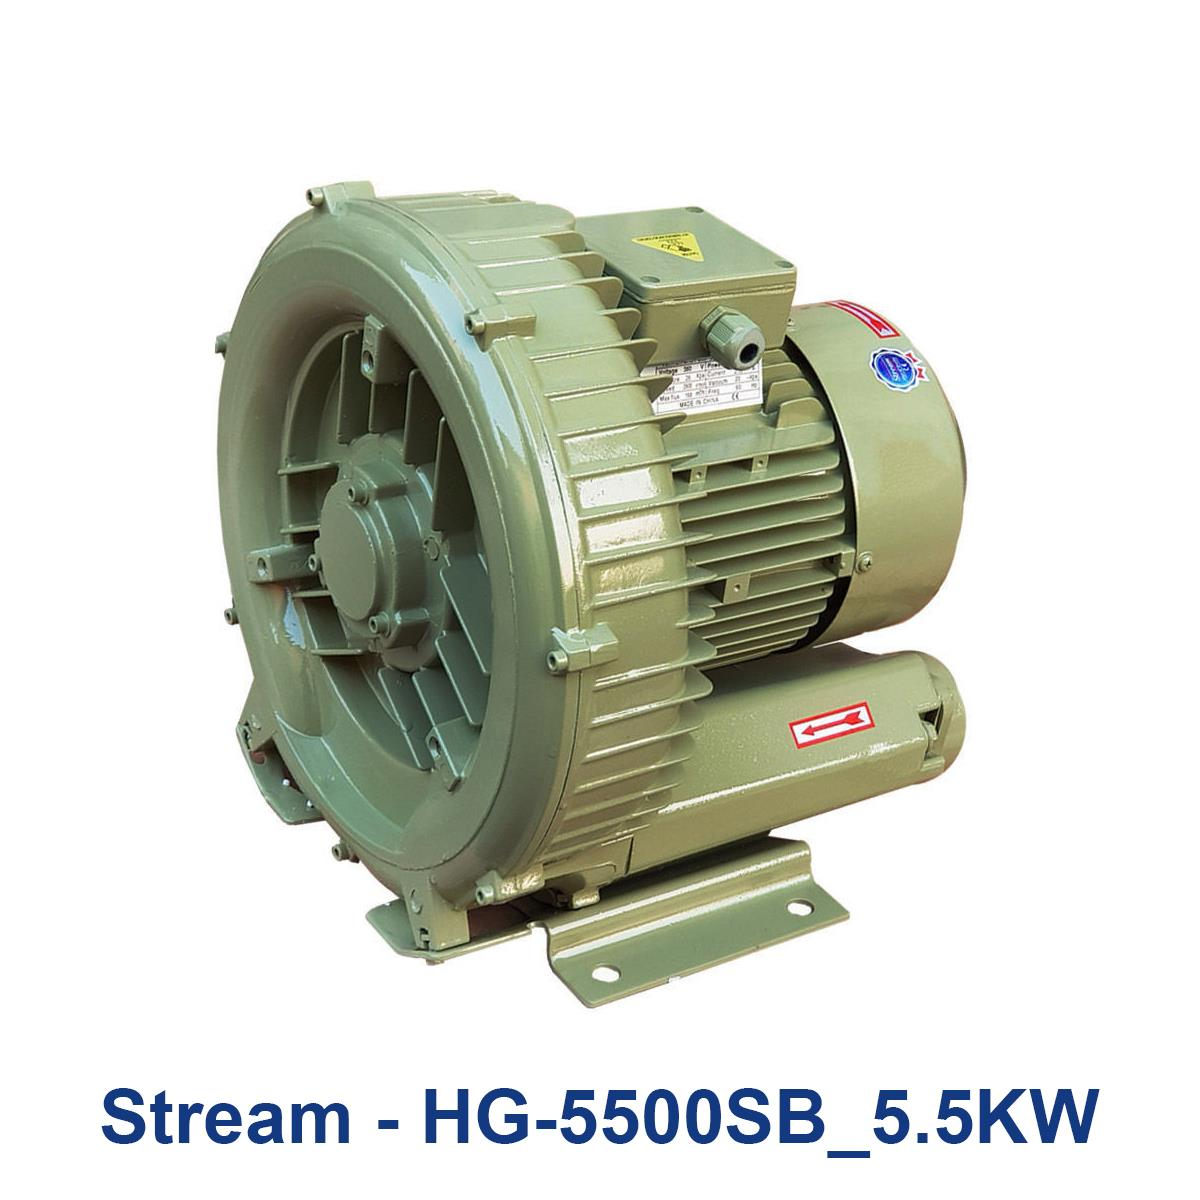 Stream---HG-5500SB_5.5KW